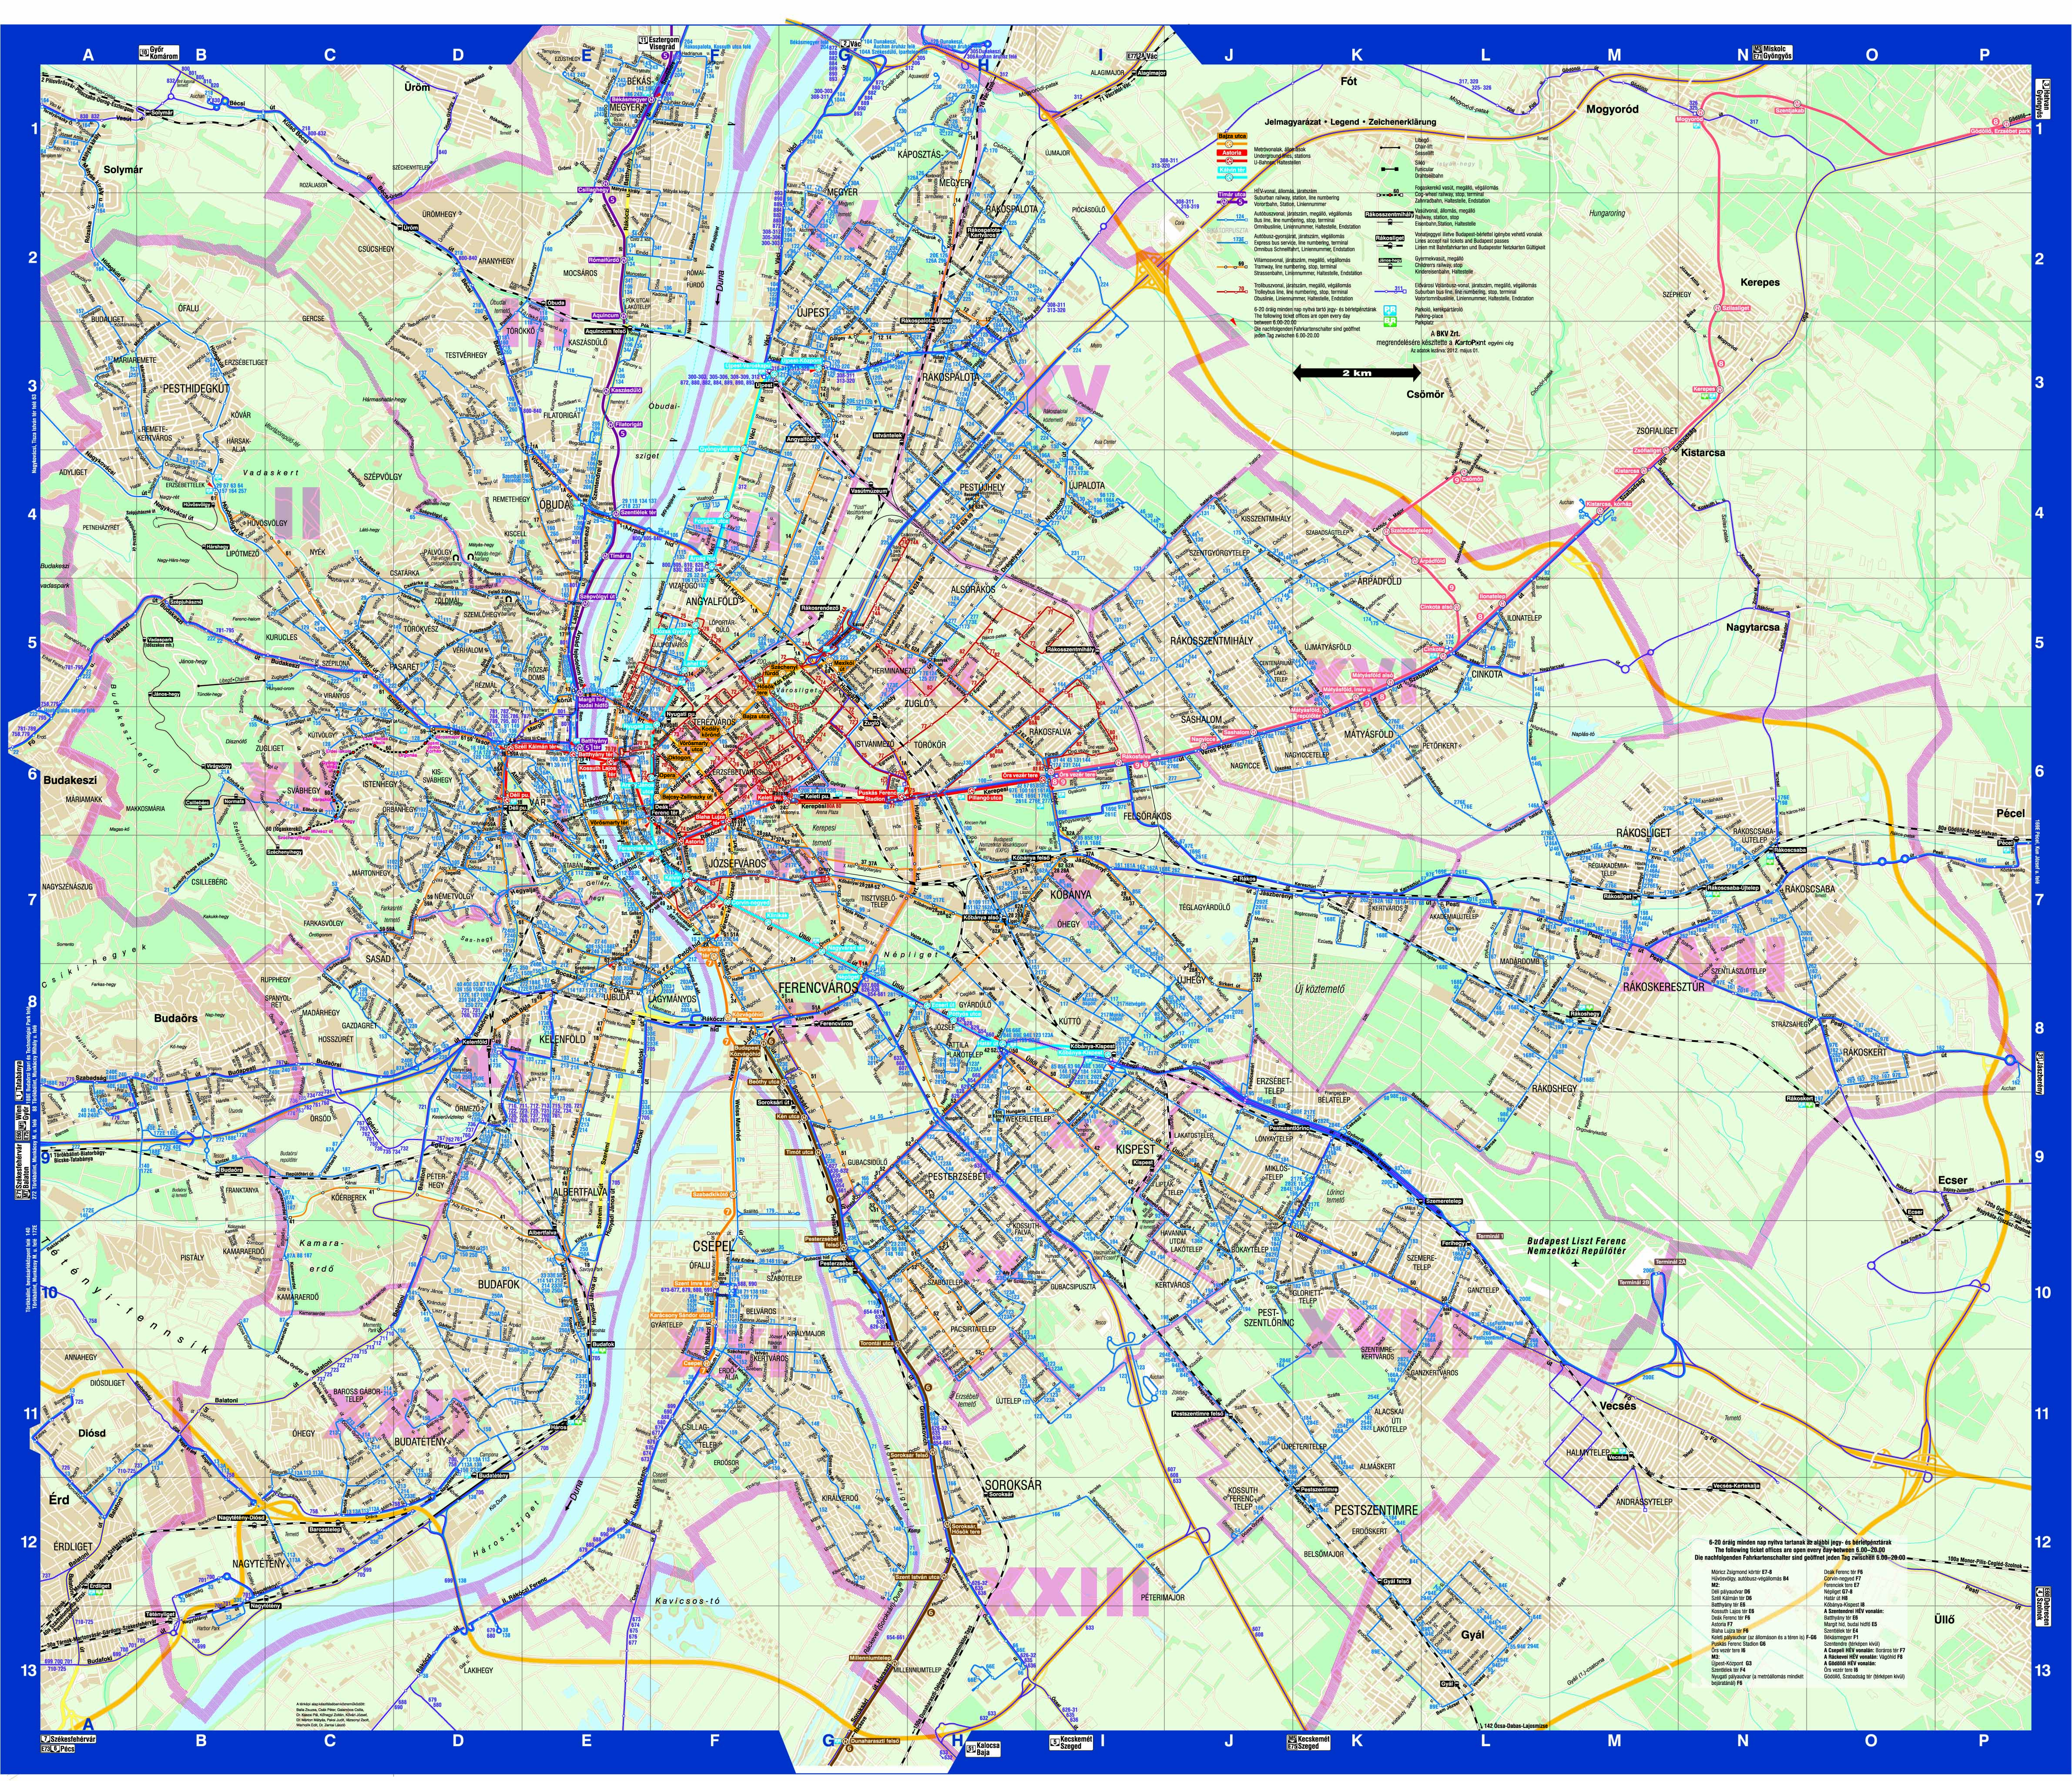 közlekedési térkép budapest Online térképek: Budapest közlekedési térkép közlekedési térkép budapest